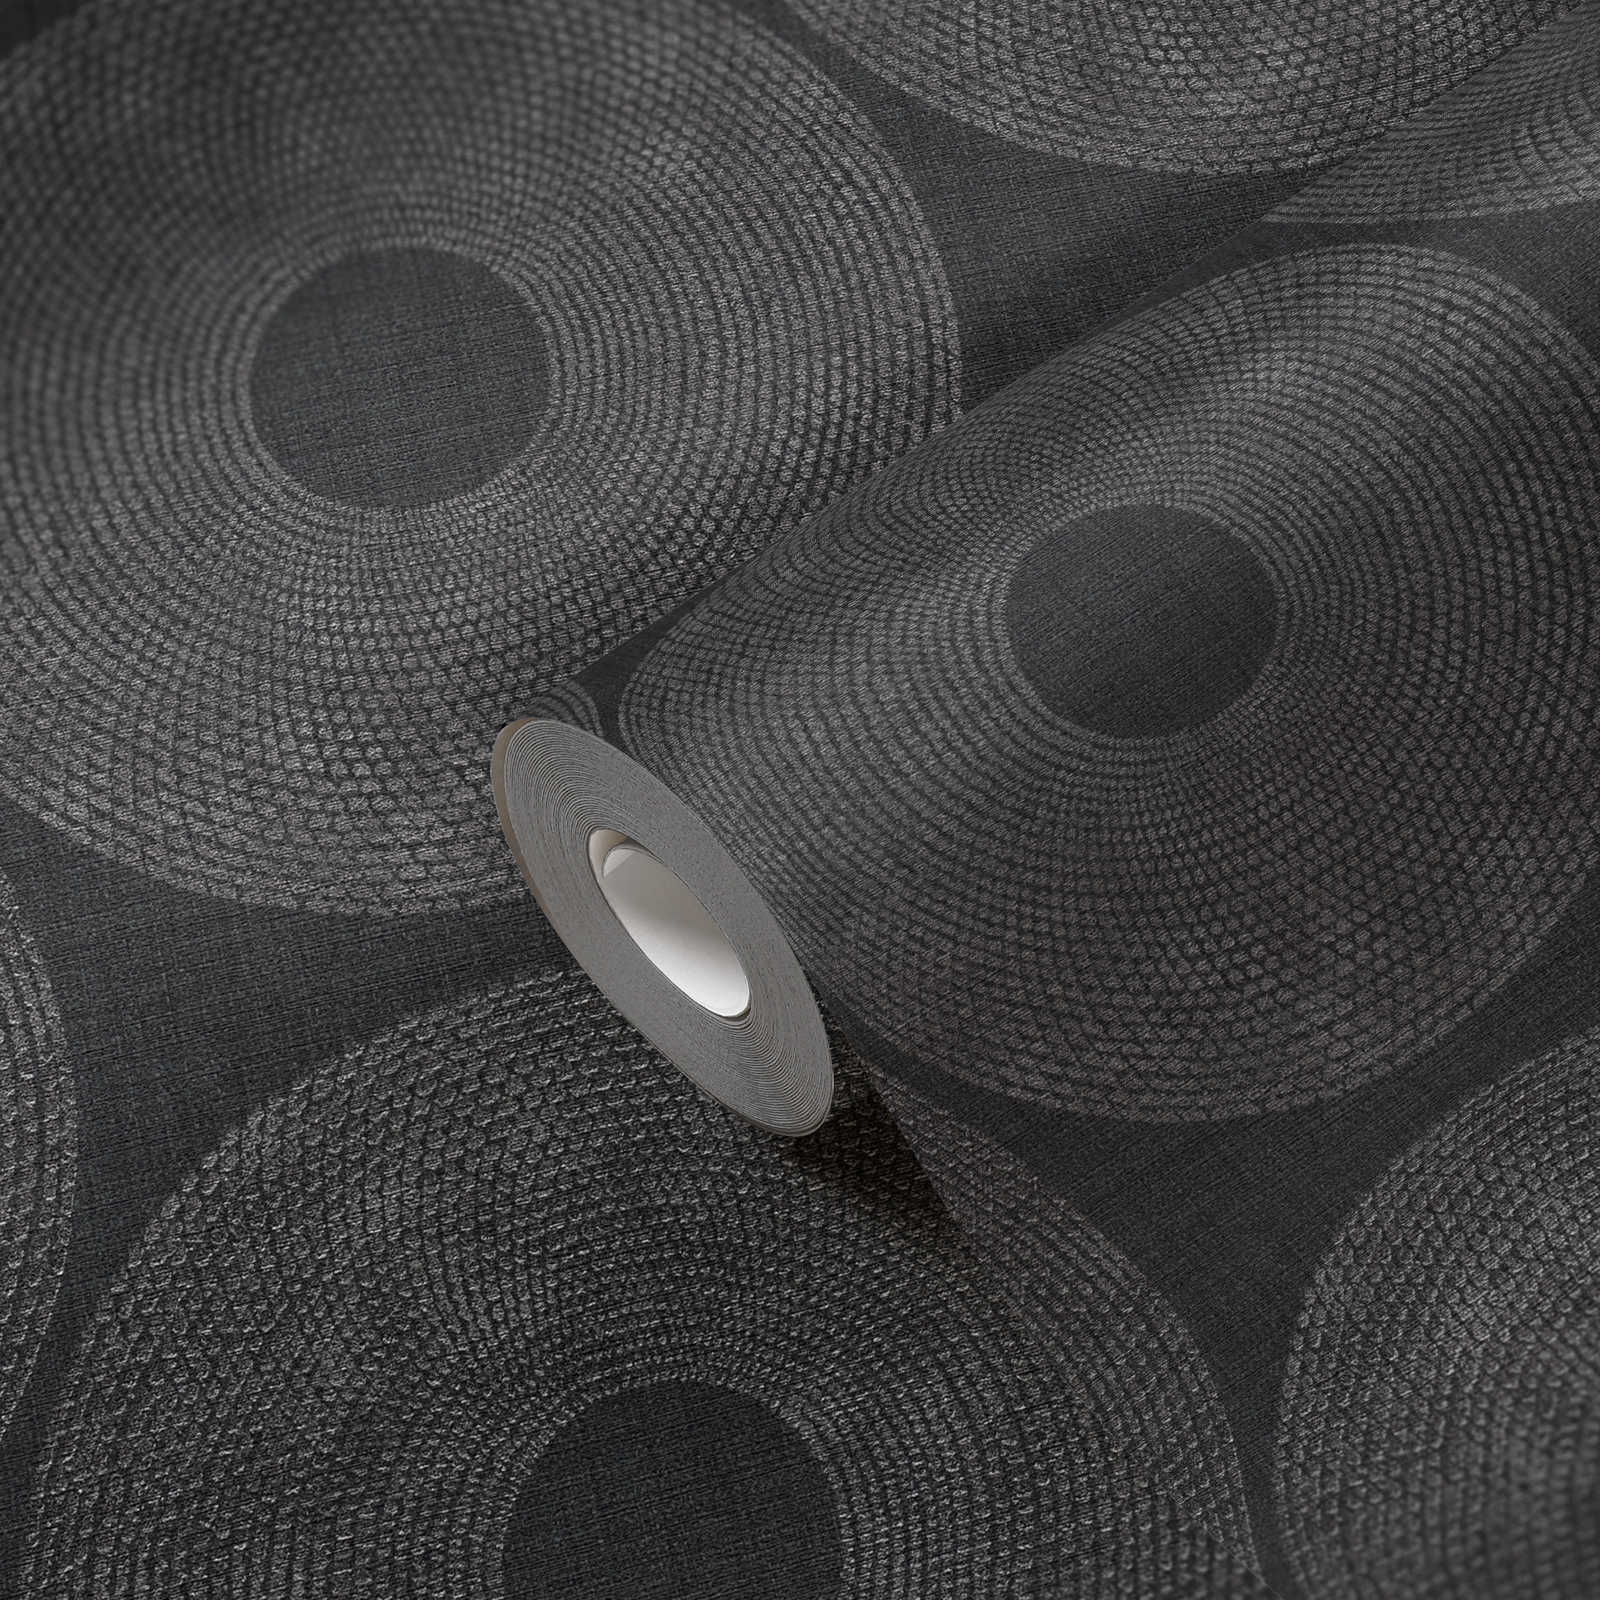             Papel pintado Ethno círculos con diseño de estructura - gris, metálico
        